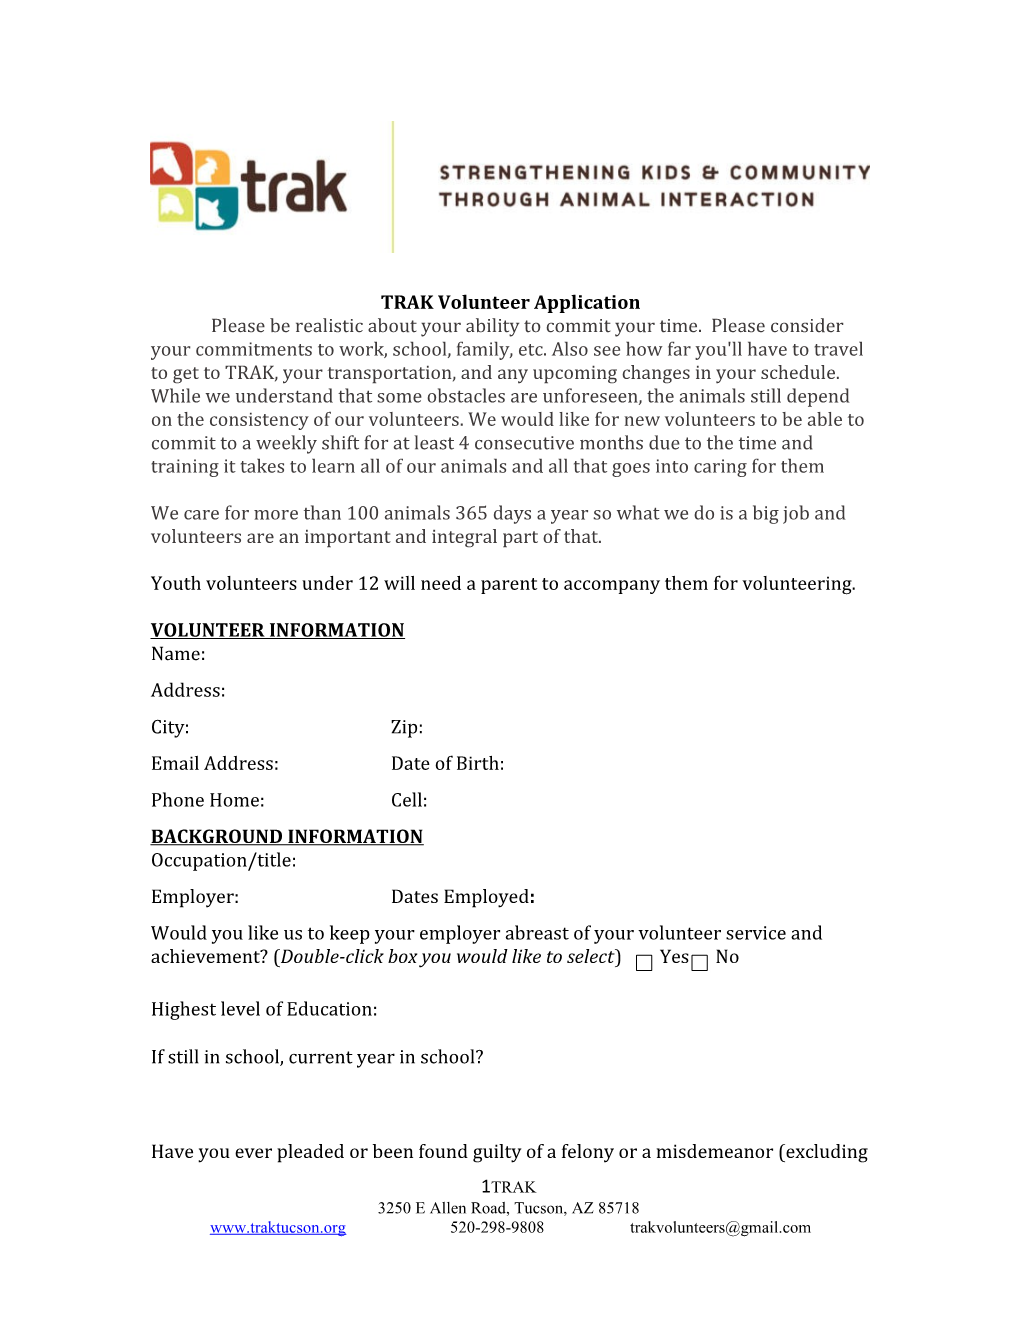 TRAK Volunteer Application